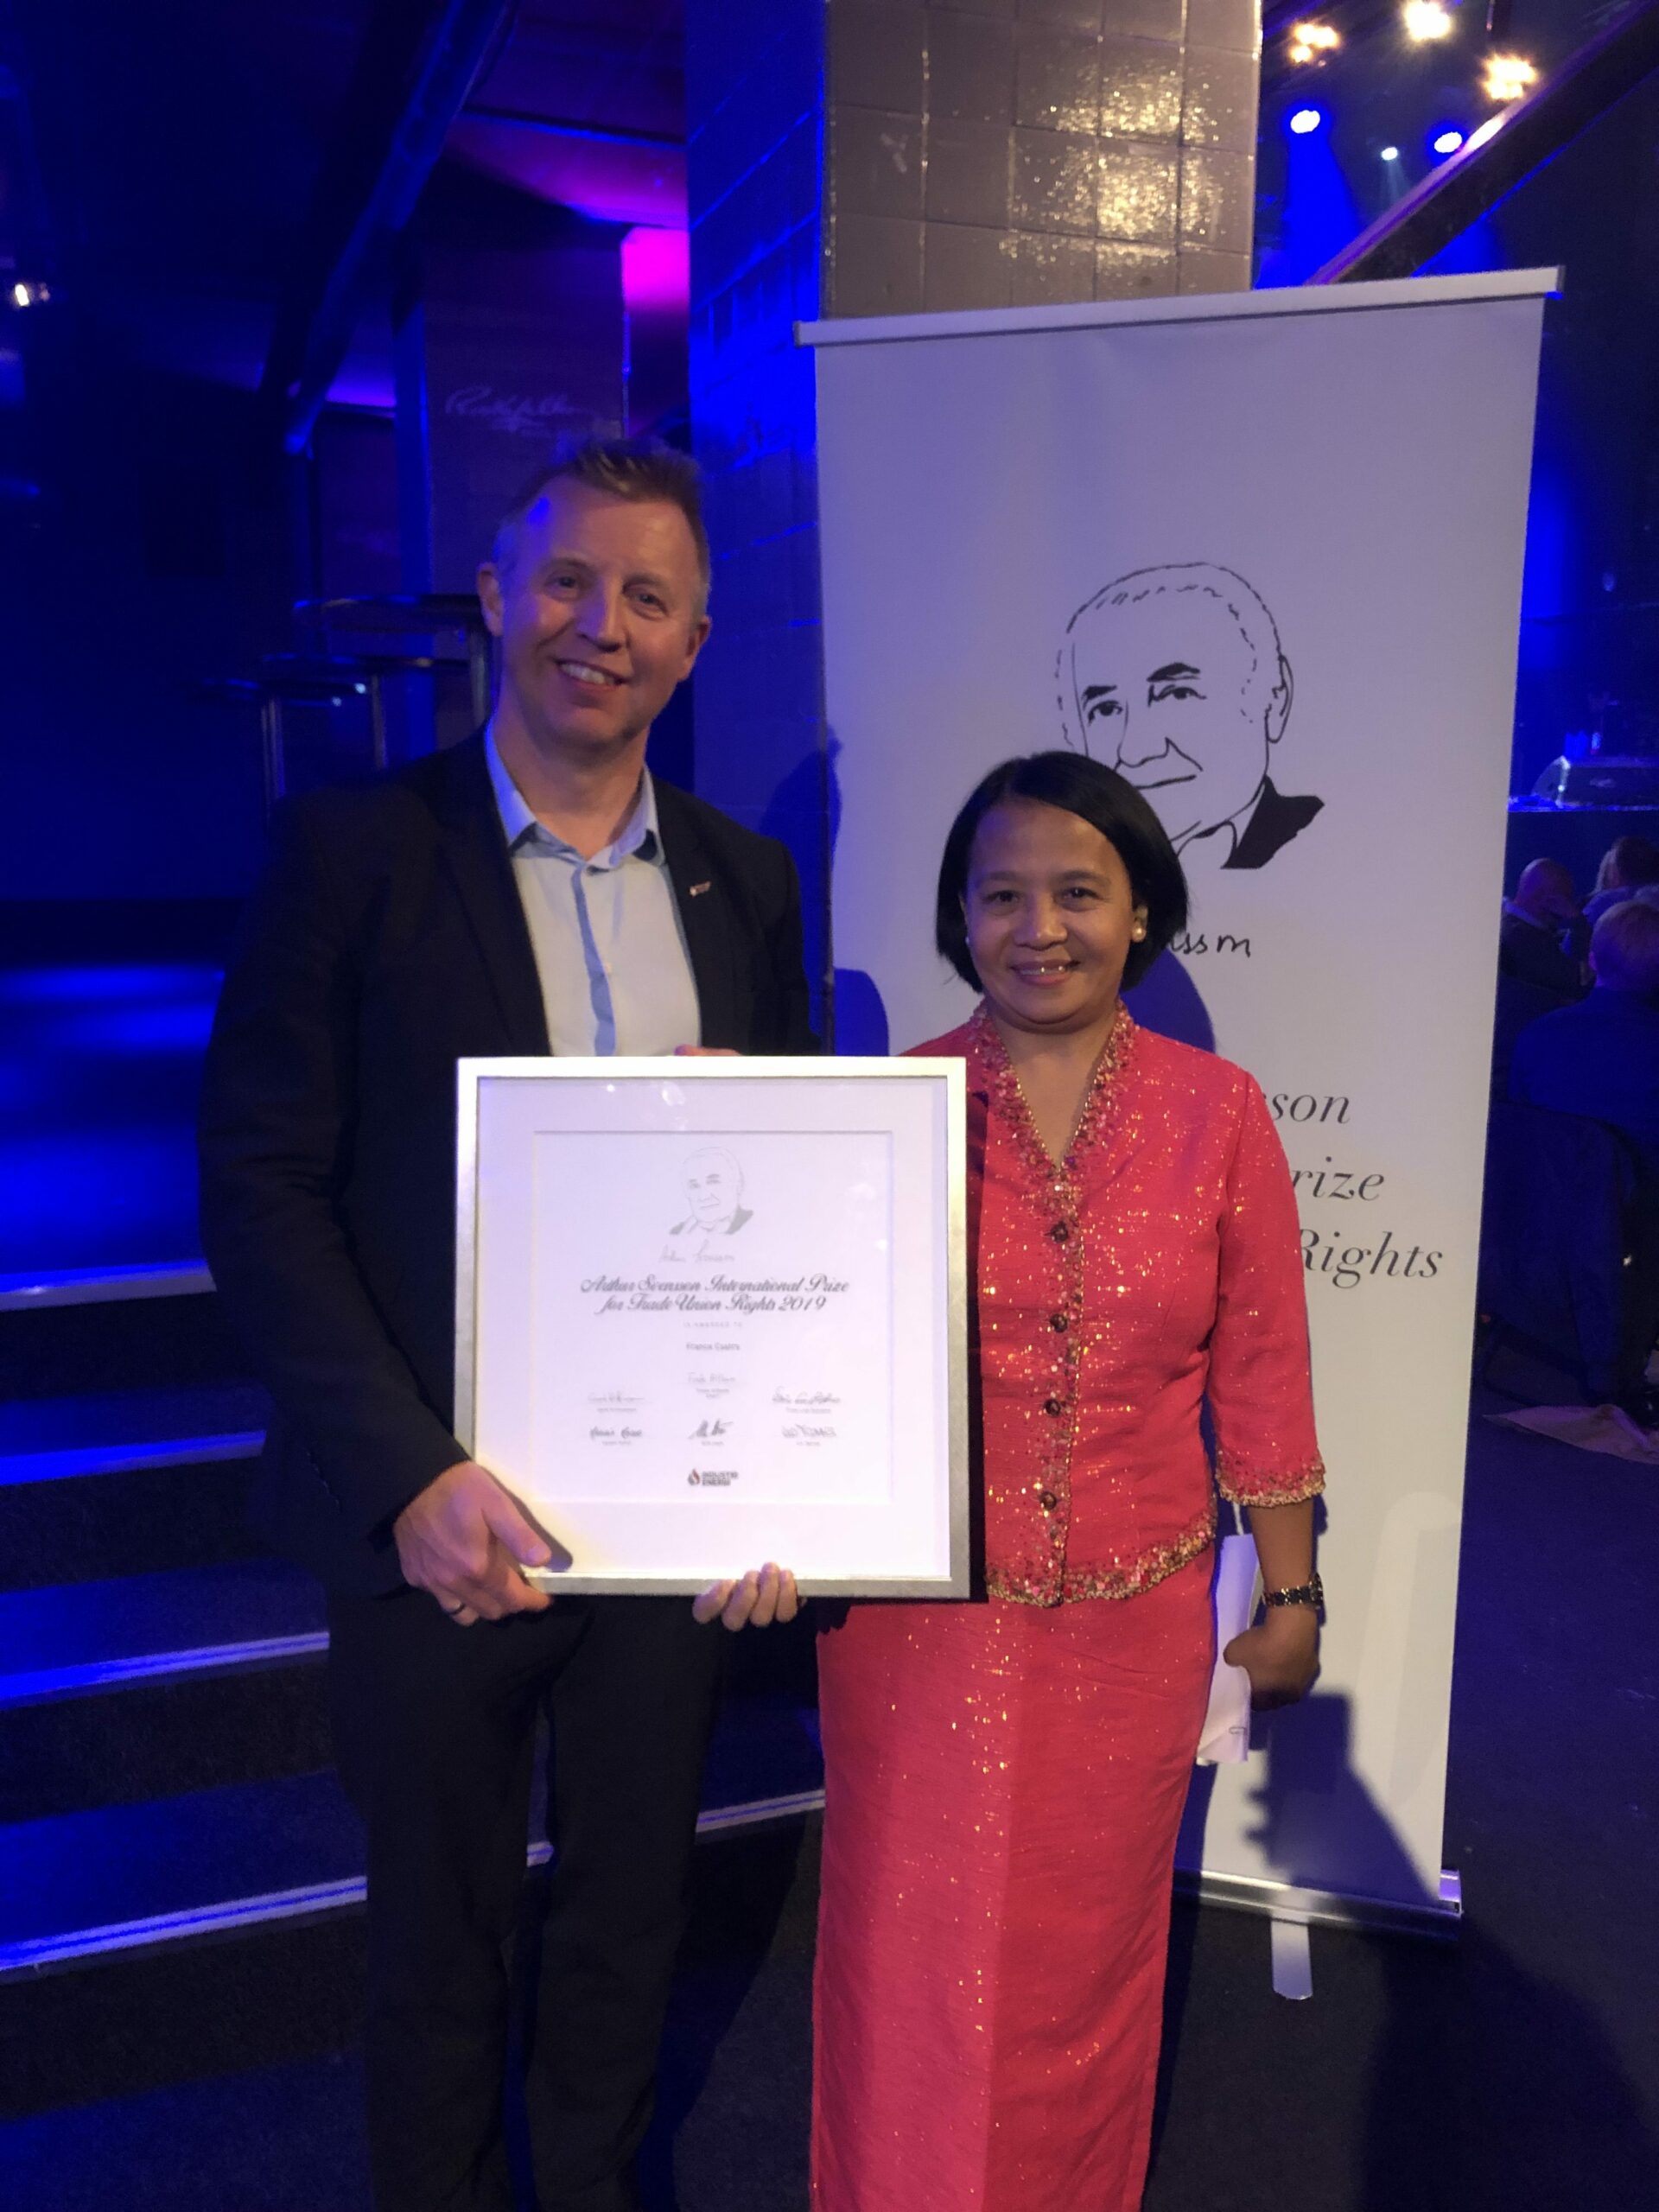 Forbundsleder Frode Alfheim delte ut prisen til France Castro for hennes utrettelige kamp for lærere og arbeidstakerrettigheter på Filippinene.